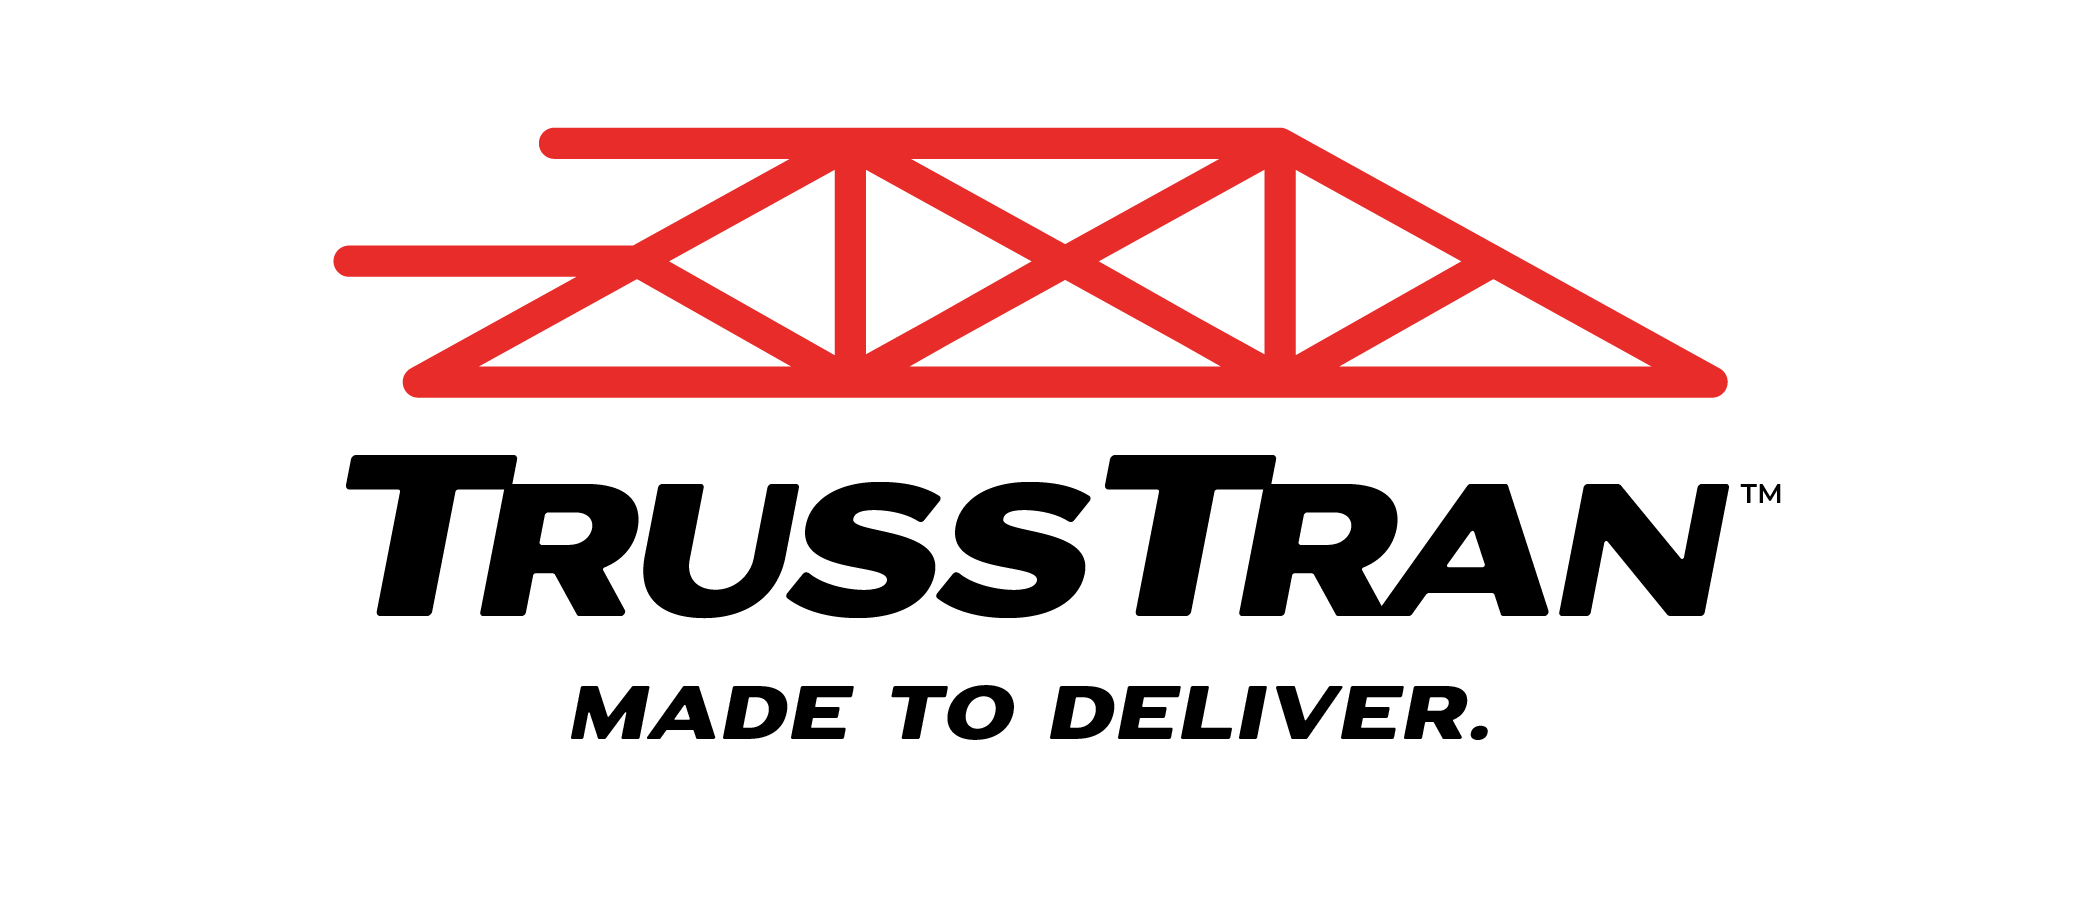 TrussTran-full-logo-crop-06